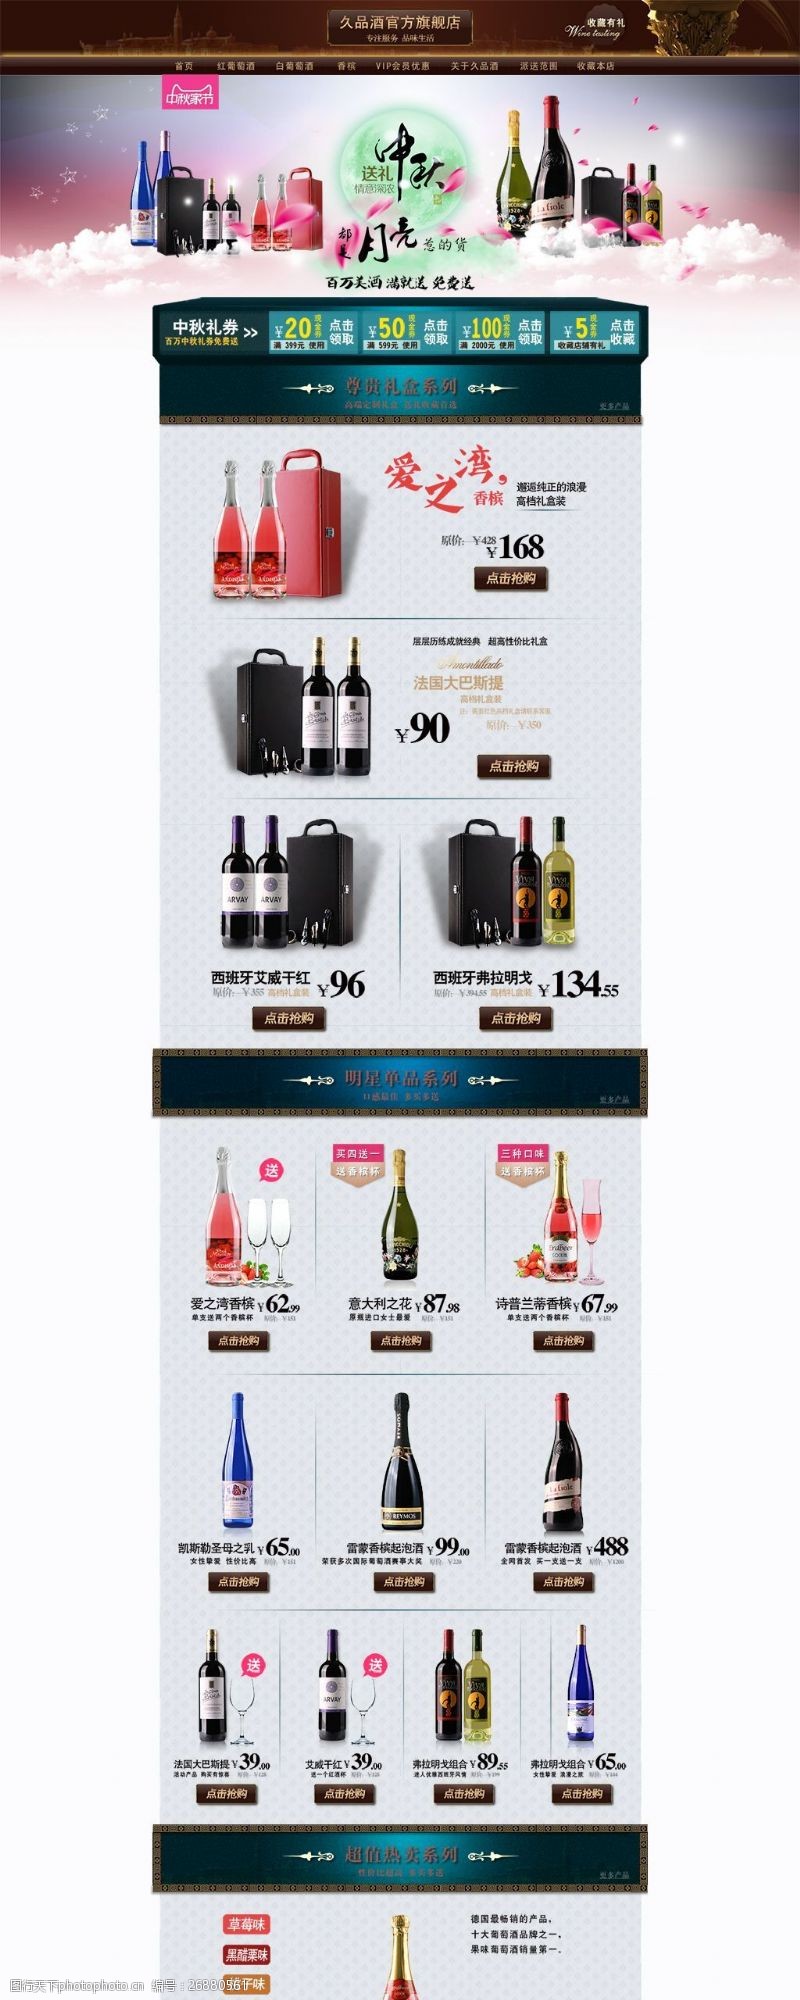 中秋节模板下载中秋专题主题红酒促销PSD首页模板